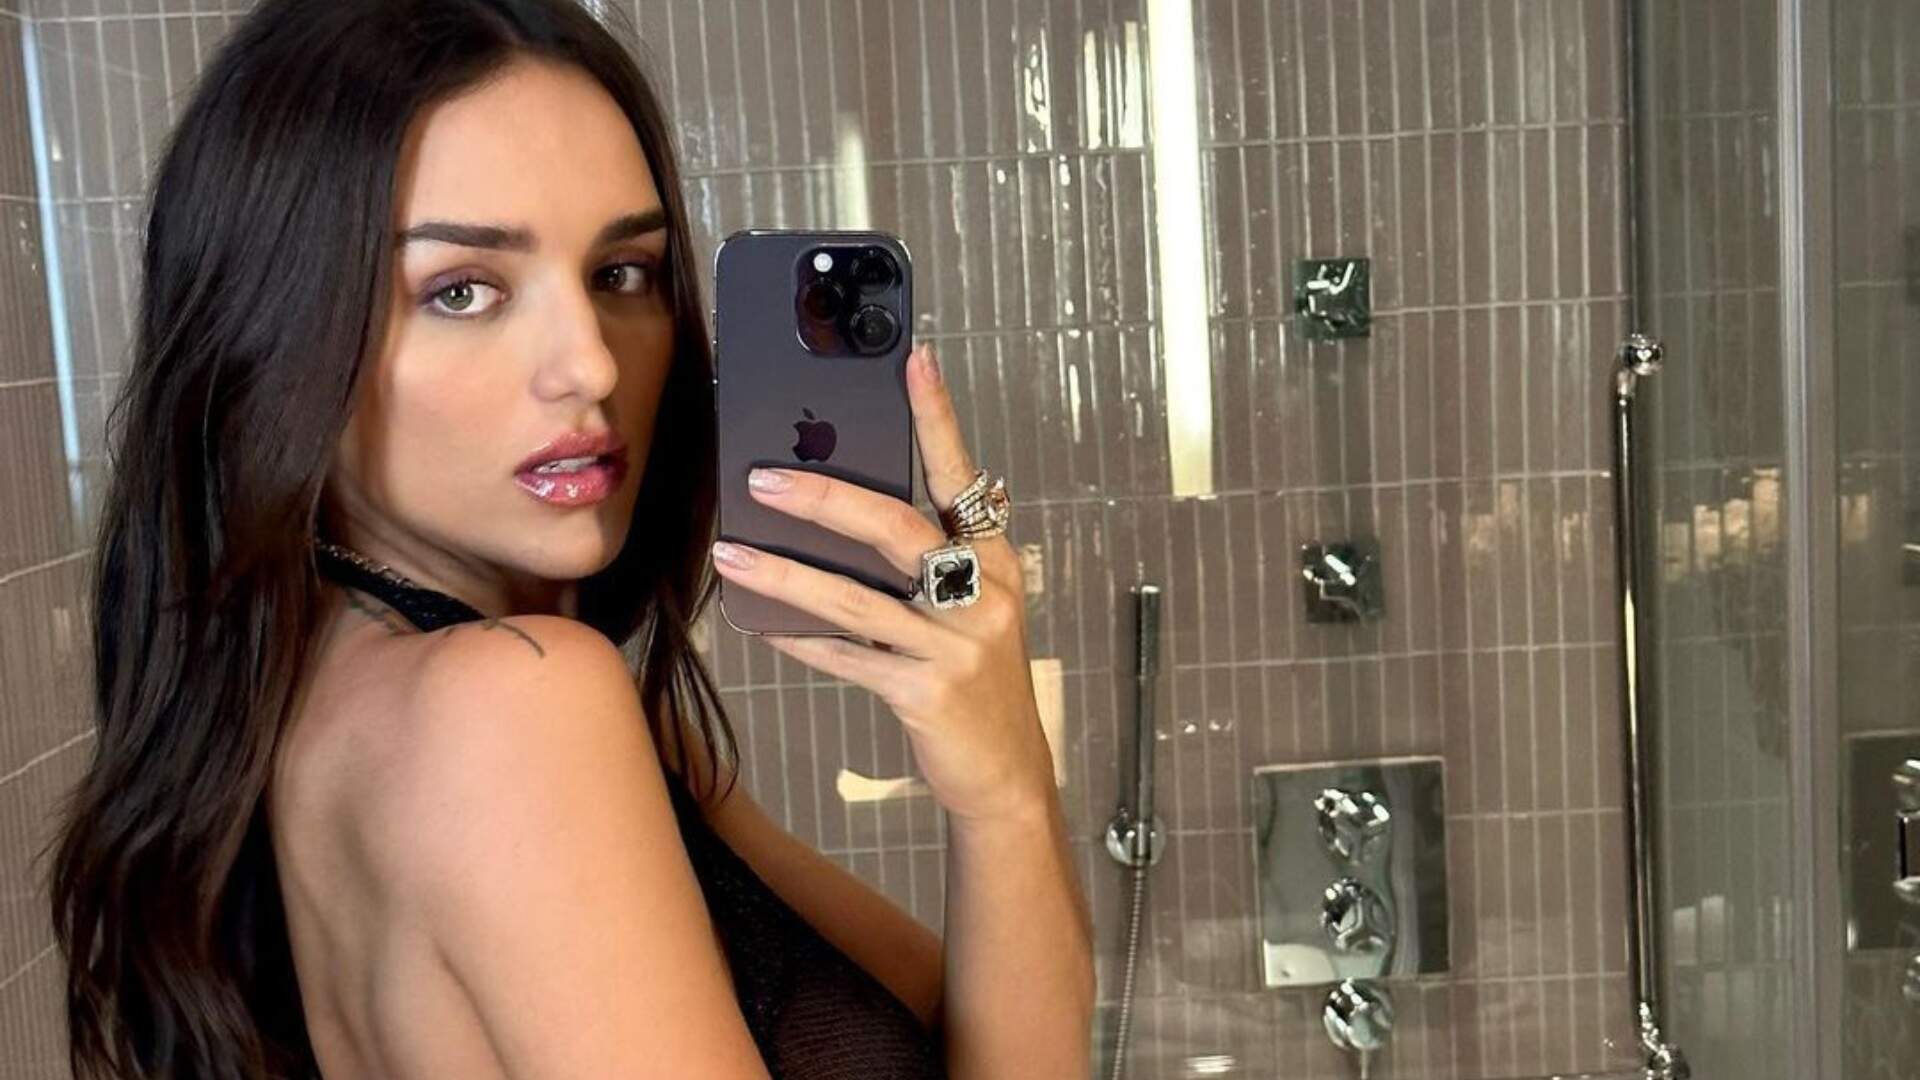 Rafa Kalimann “testa” câmera do novo celular sensualizando de roupa transparente no banheiro - Metropolitana FM